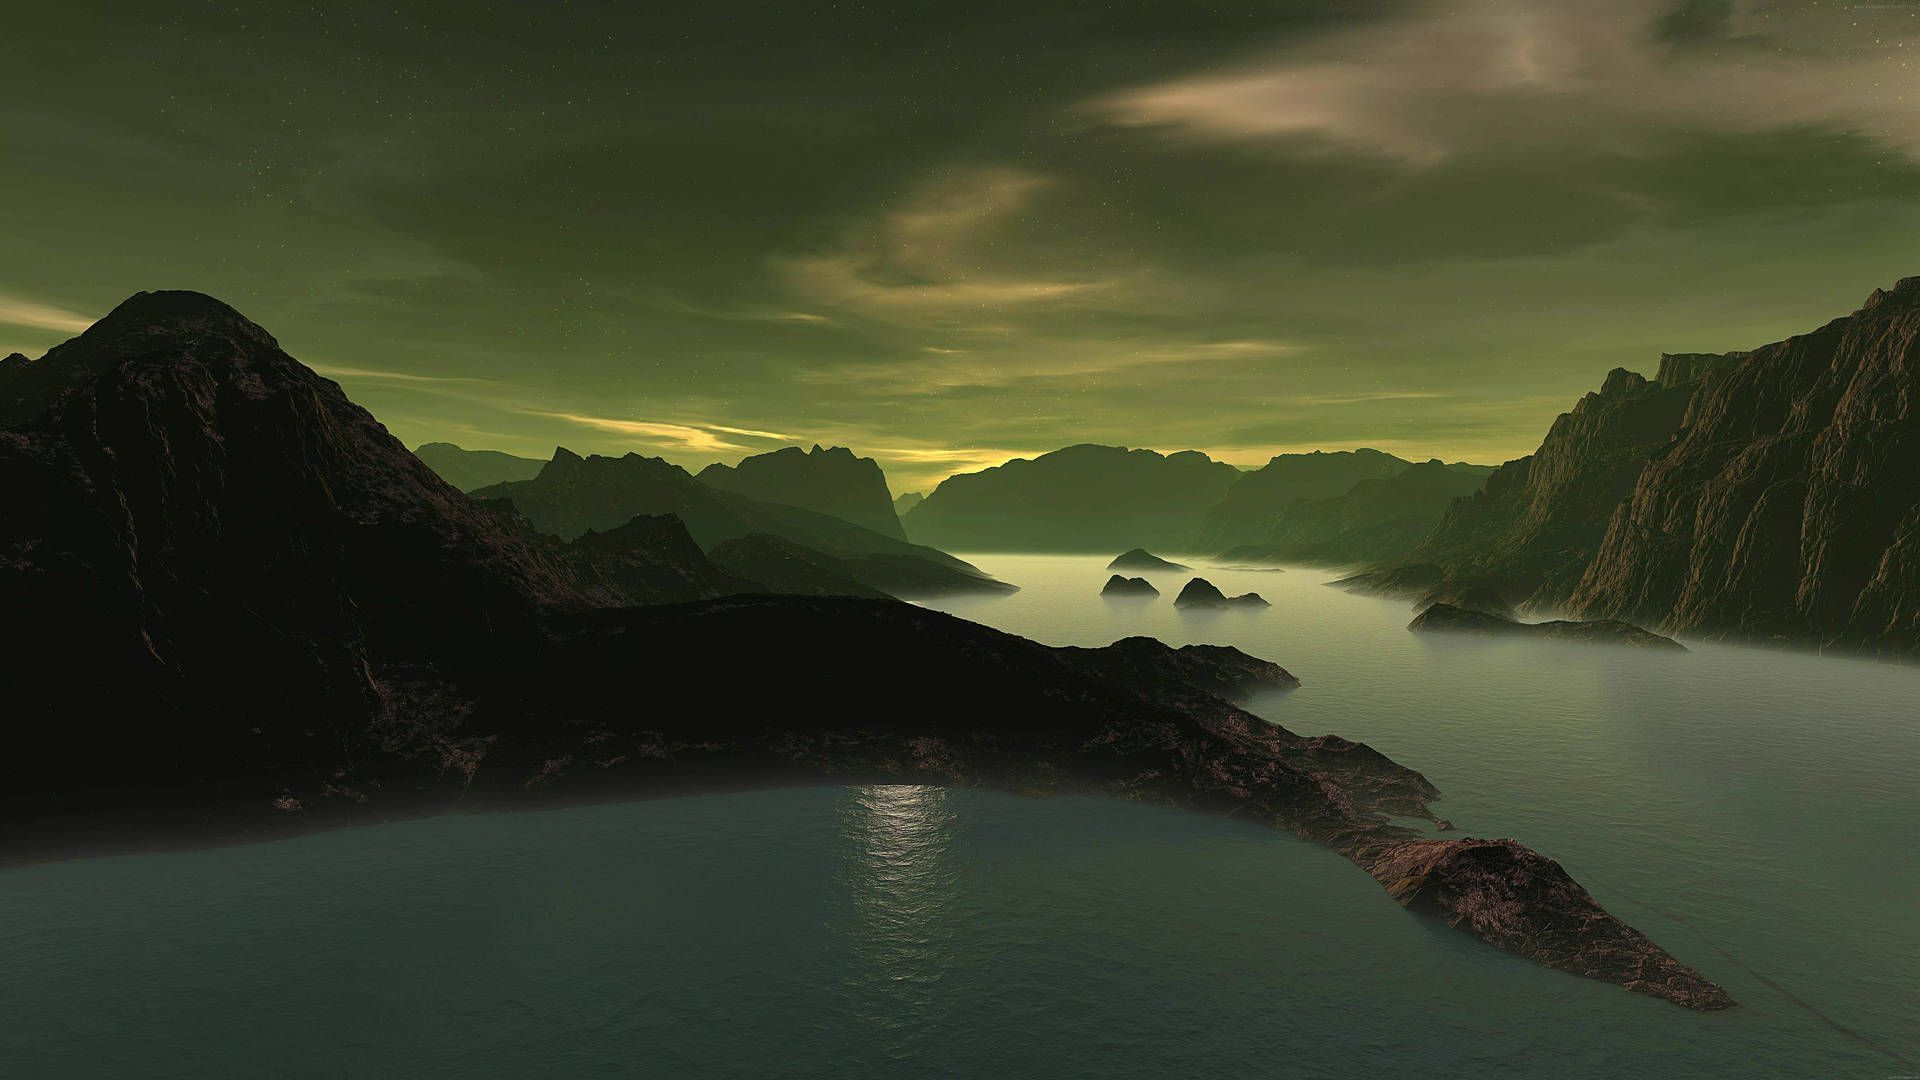 3D landscape of a green mountain range - Lake